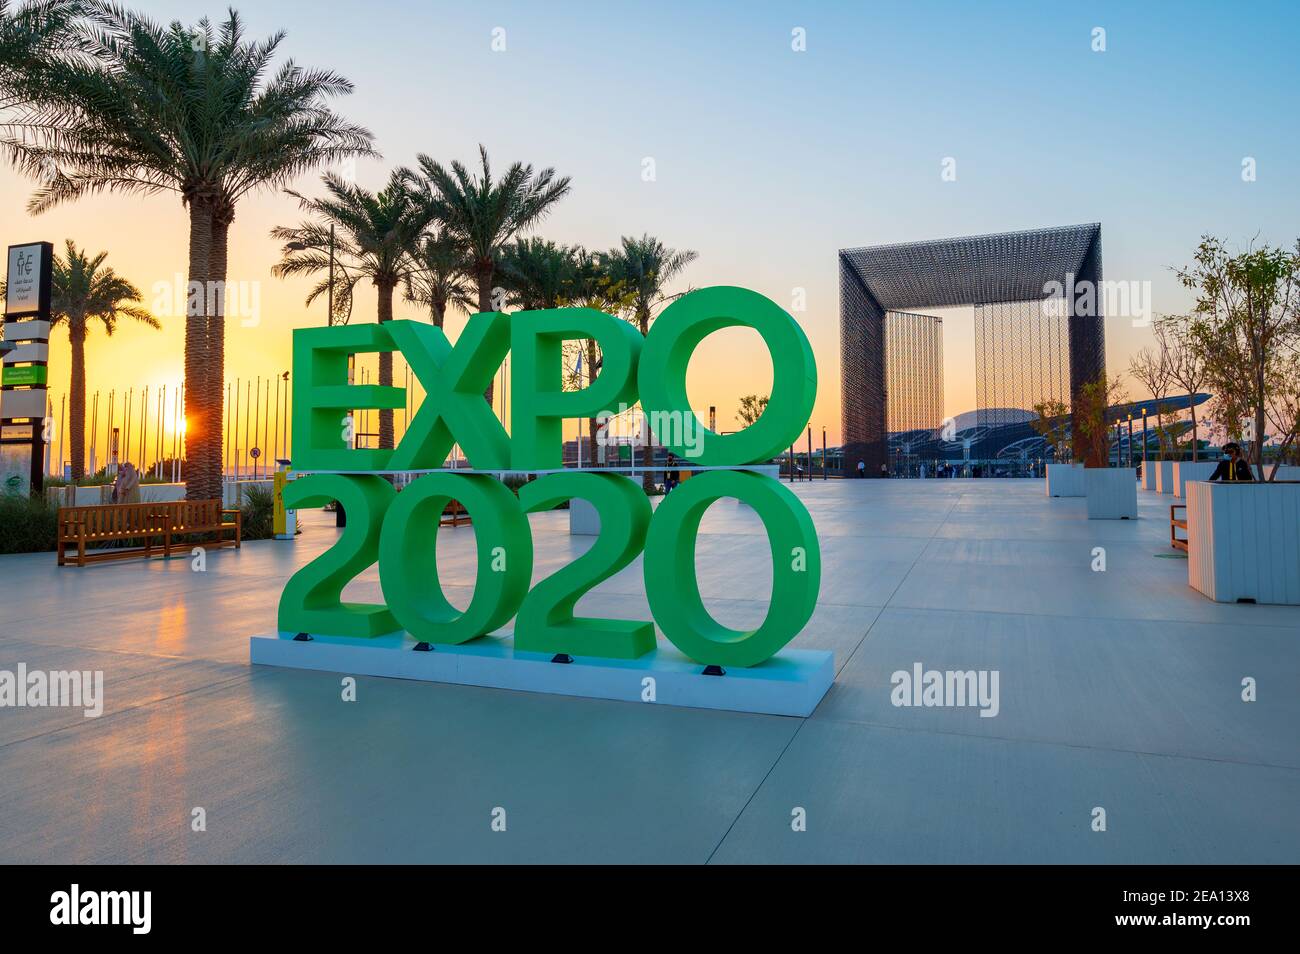 Dubaï, Émirats arabes Unis - 4 février 2020 : entrée du Terra Sustainability Pavilion à l'EXPO 2020 au coucher du soleil construit pour l'EXPO 2020 prévu Banque D'Images